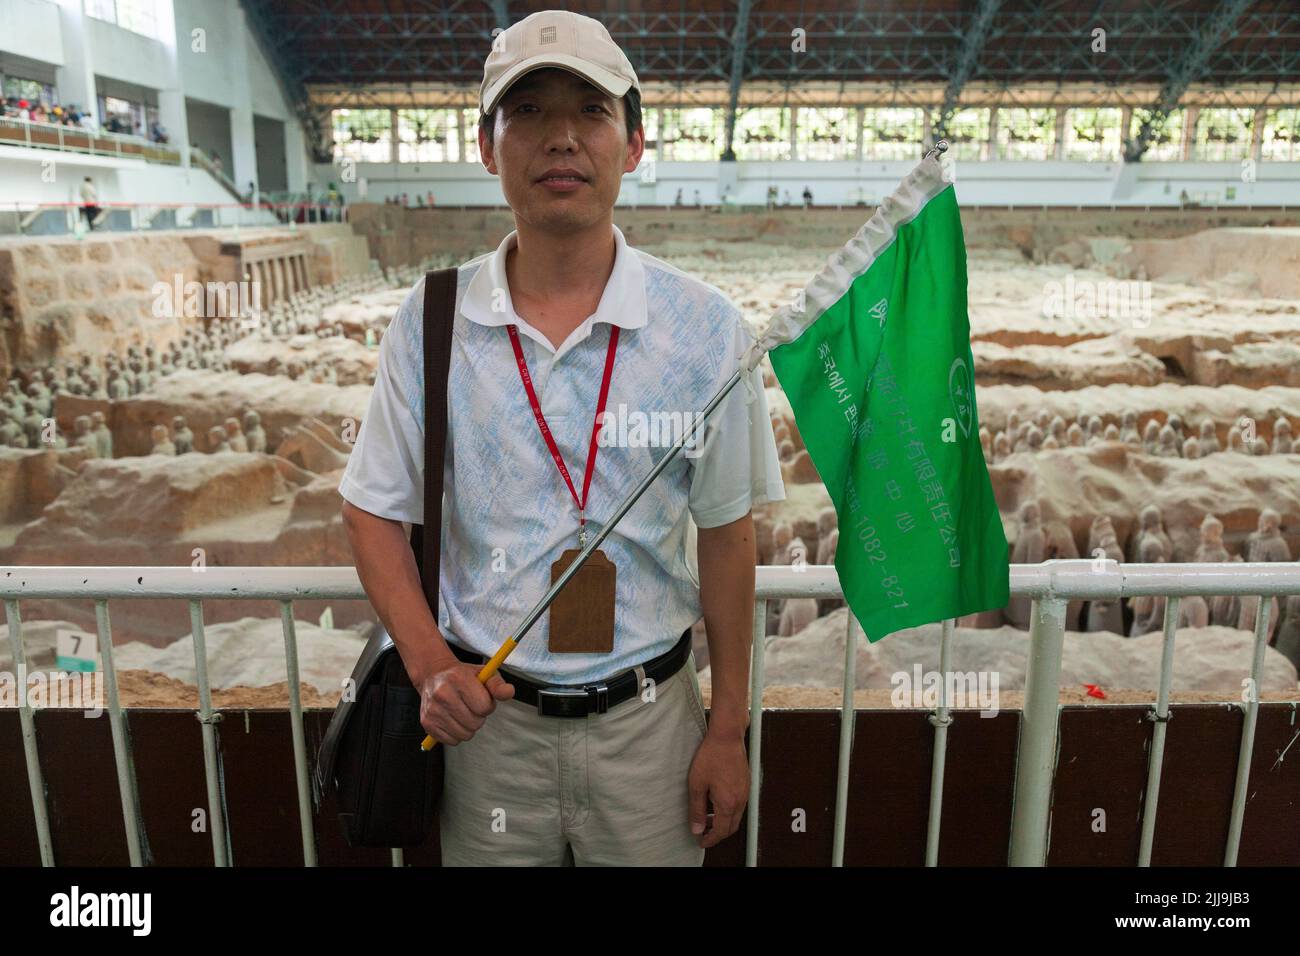 Guide touristique avec un drapeau aux couleurs vives qui mène à une fête de touristes chinois visitant / observant le stand 1 de l'armée de terre cuite au musée du Mausolée de l'empereur Qinshihuang à Xi'an, en Chine. PRC. (125) Banque D'Images